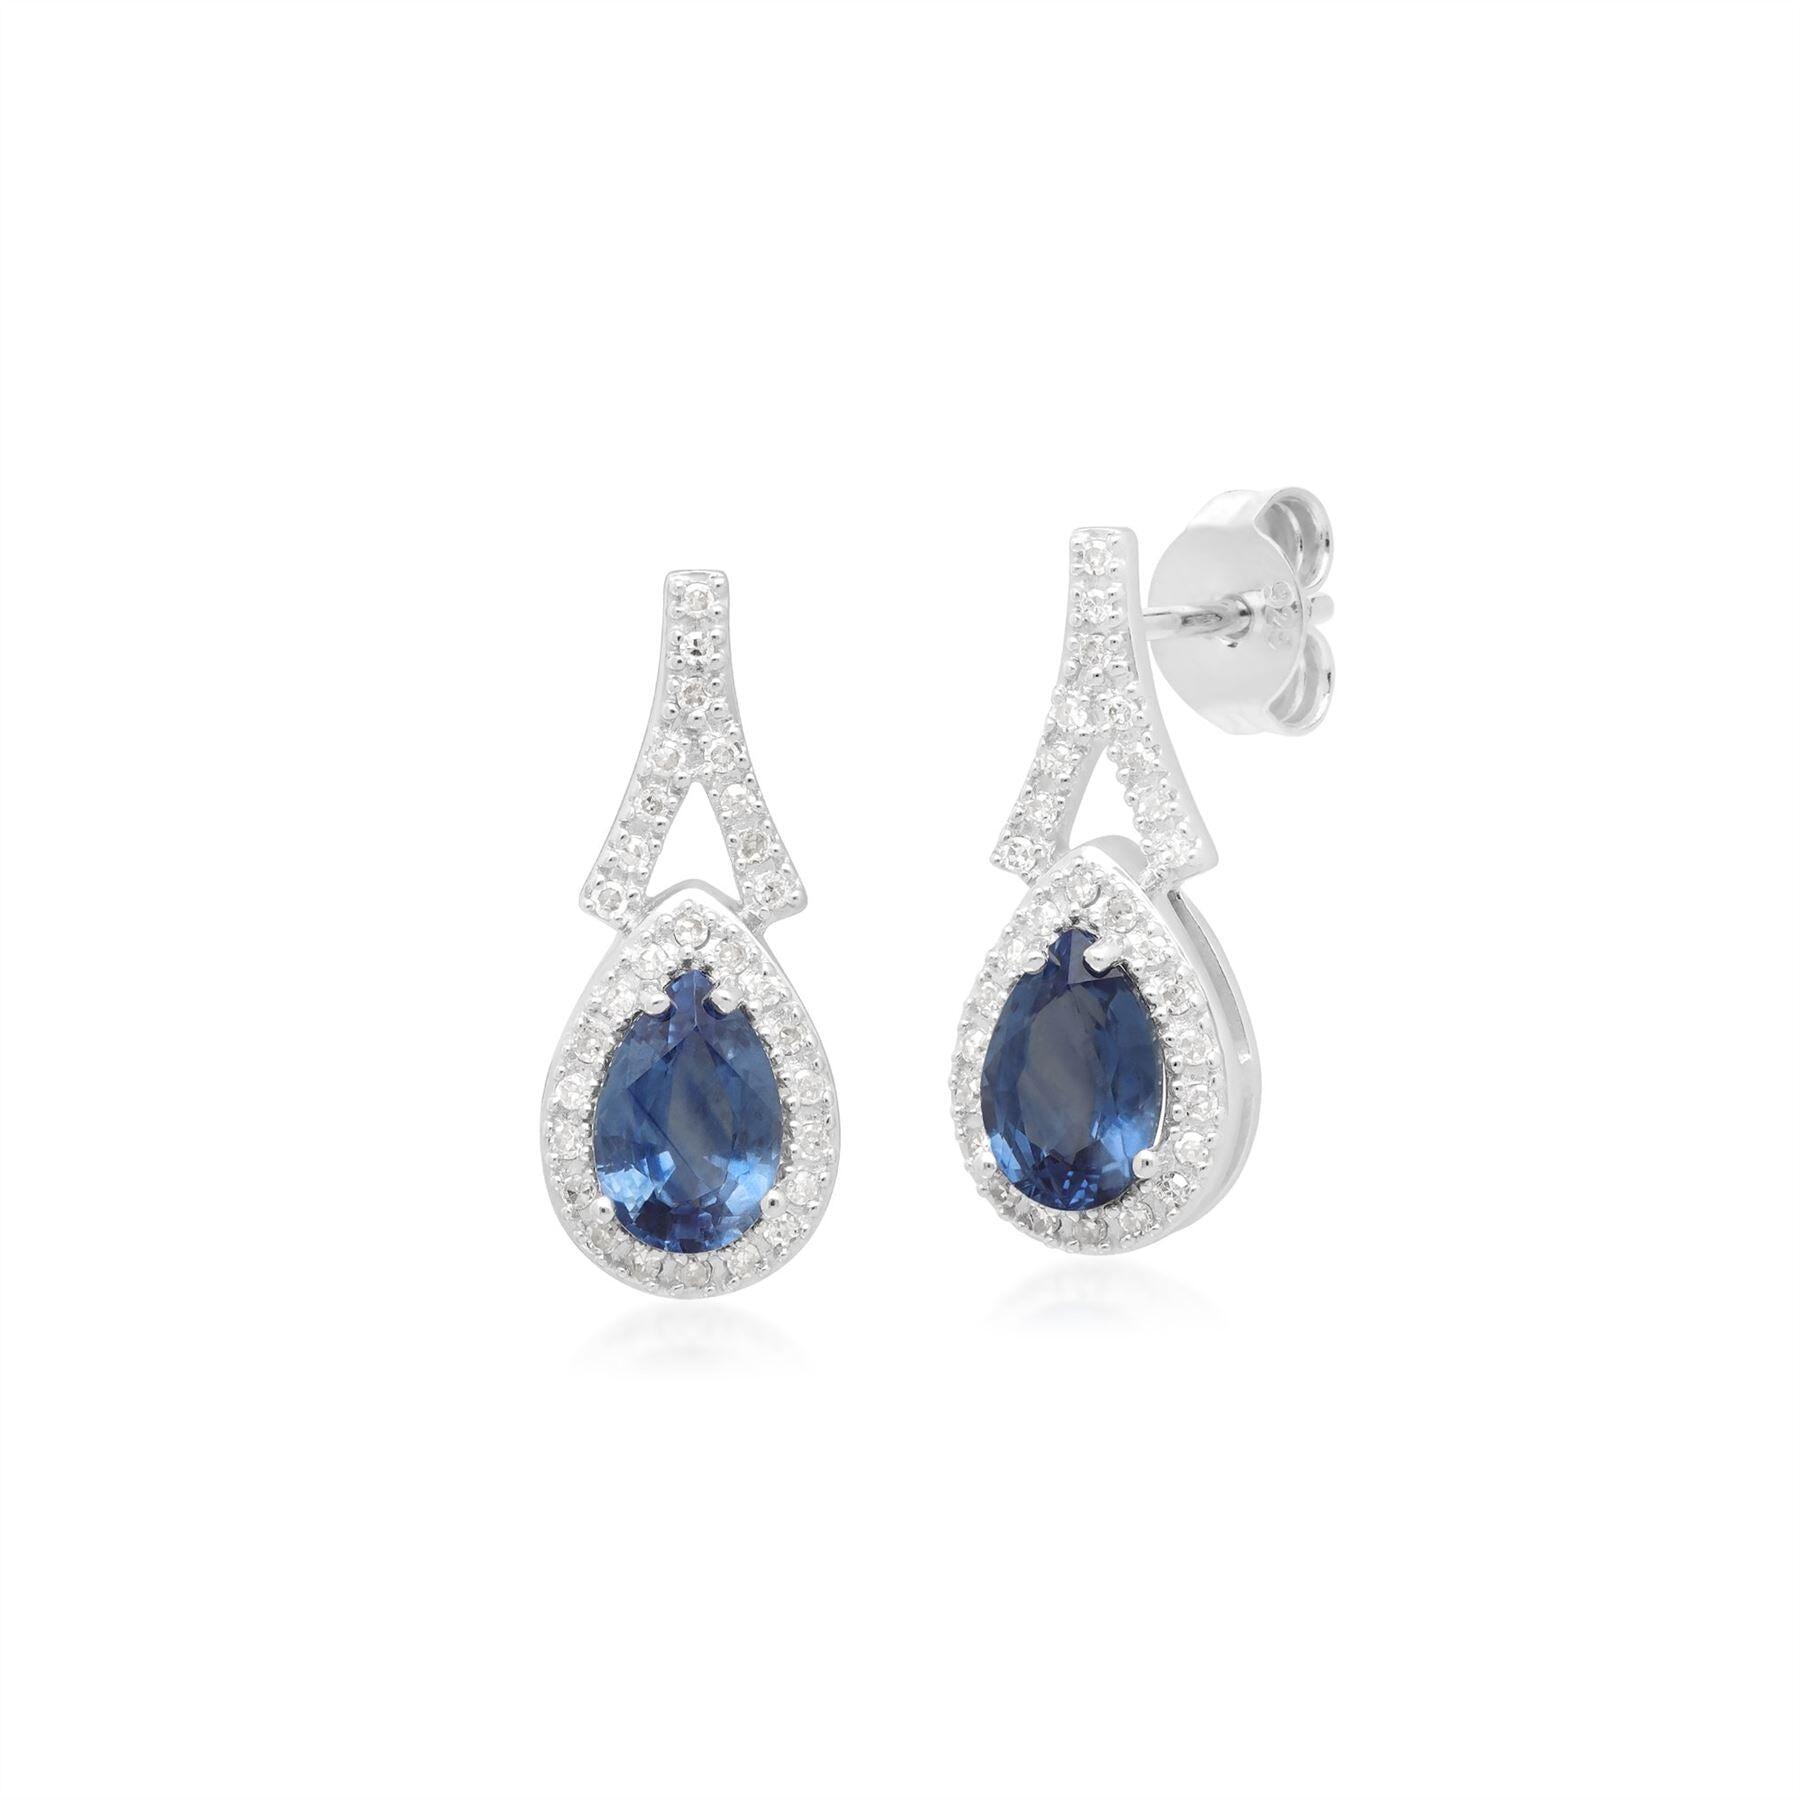 Teardrop Lux Blue Sapphire & Diamond Drop Earrings in 9ct White Gold